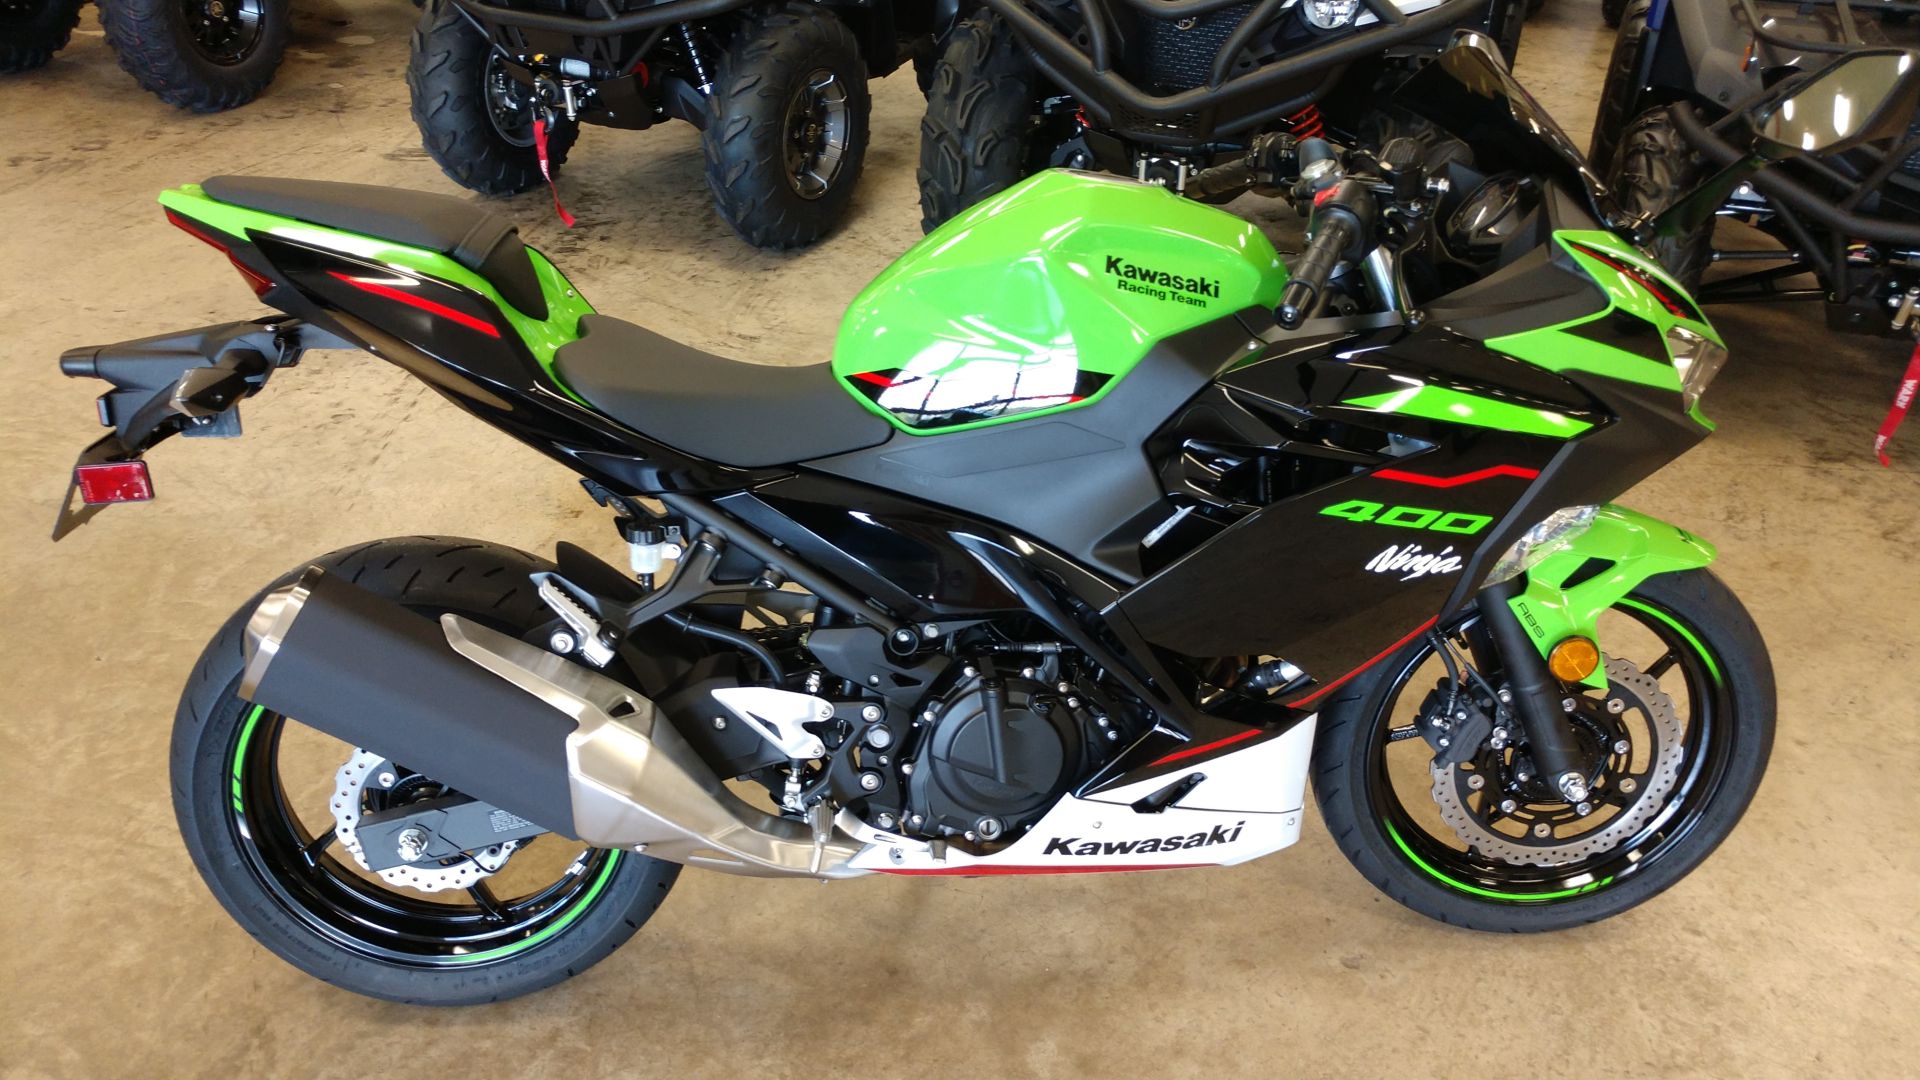 2022 Kawasaki Ninja 400 ABS KRT Edition in Unionville, Virginia - Photo 1